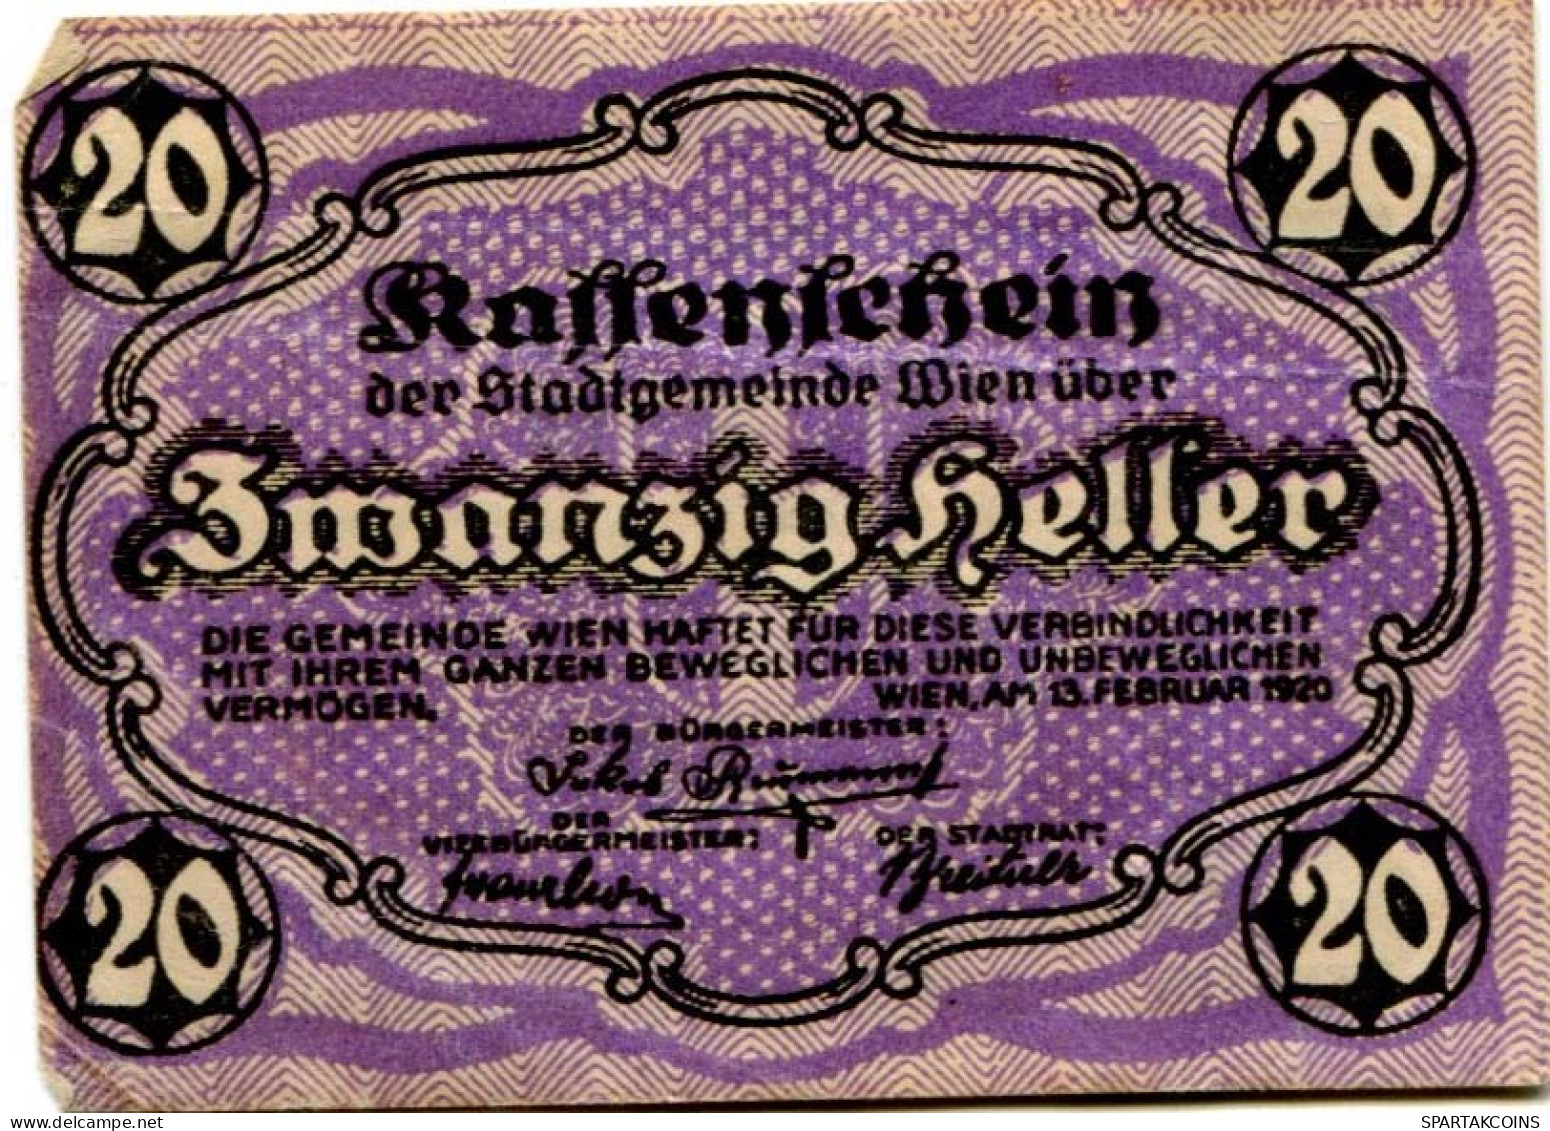 20 HELLER 1920 Stadt Wien Österreich Notgeld Papiergeld Banknote #PL568 - [11] Local Banknote Issues